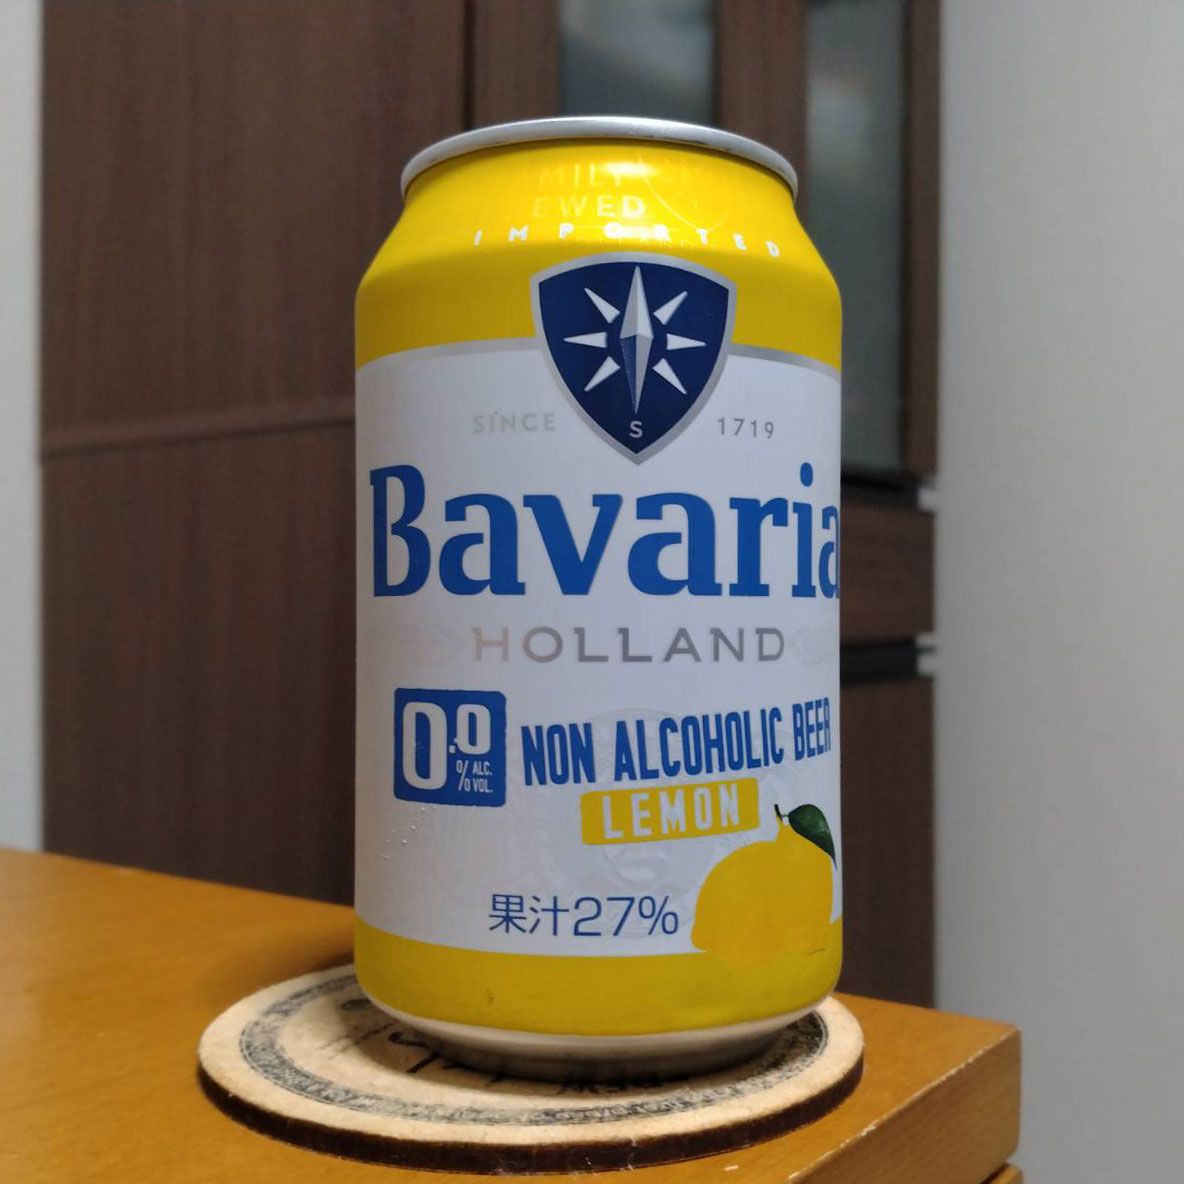 ノンアルコールフレーバービールBavaria 0.0% Lemonババリアレモン